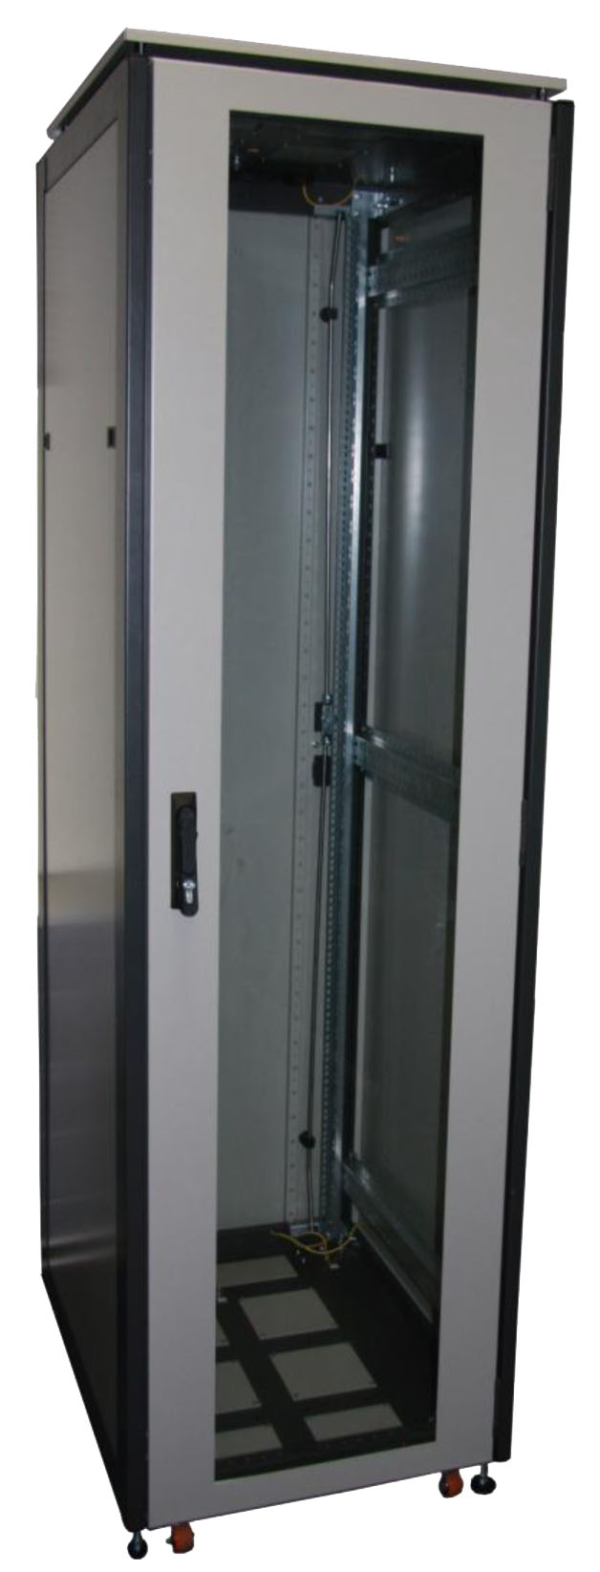 ССКТБ ТОМАСС ШТК-6812Э-01 - шкаф телекоммуникационный 19", 24U, 600х800х1200 мм, с металлической задней панелью и стеклянной дверью